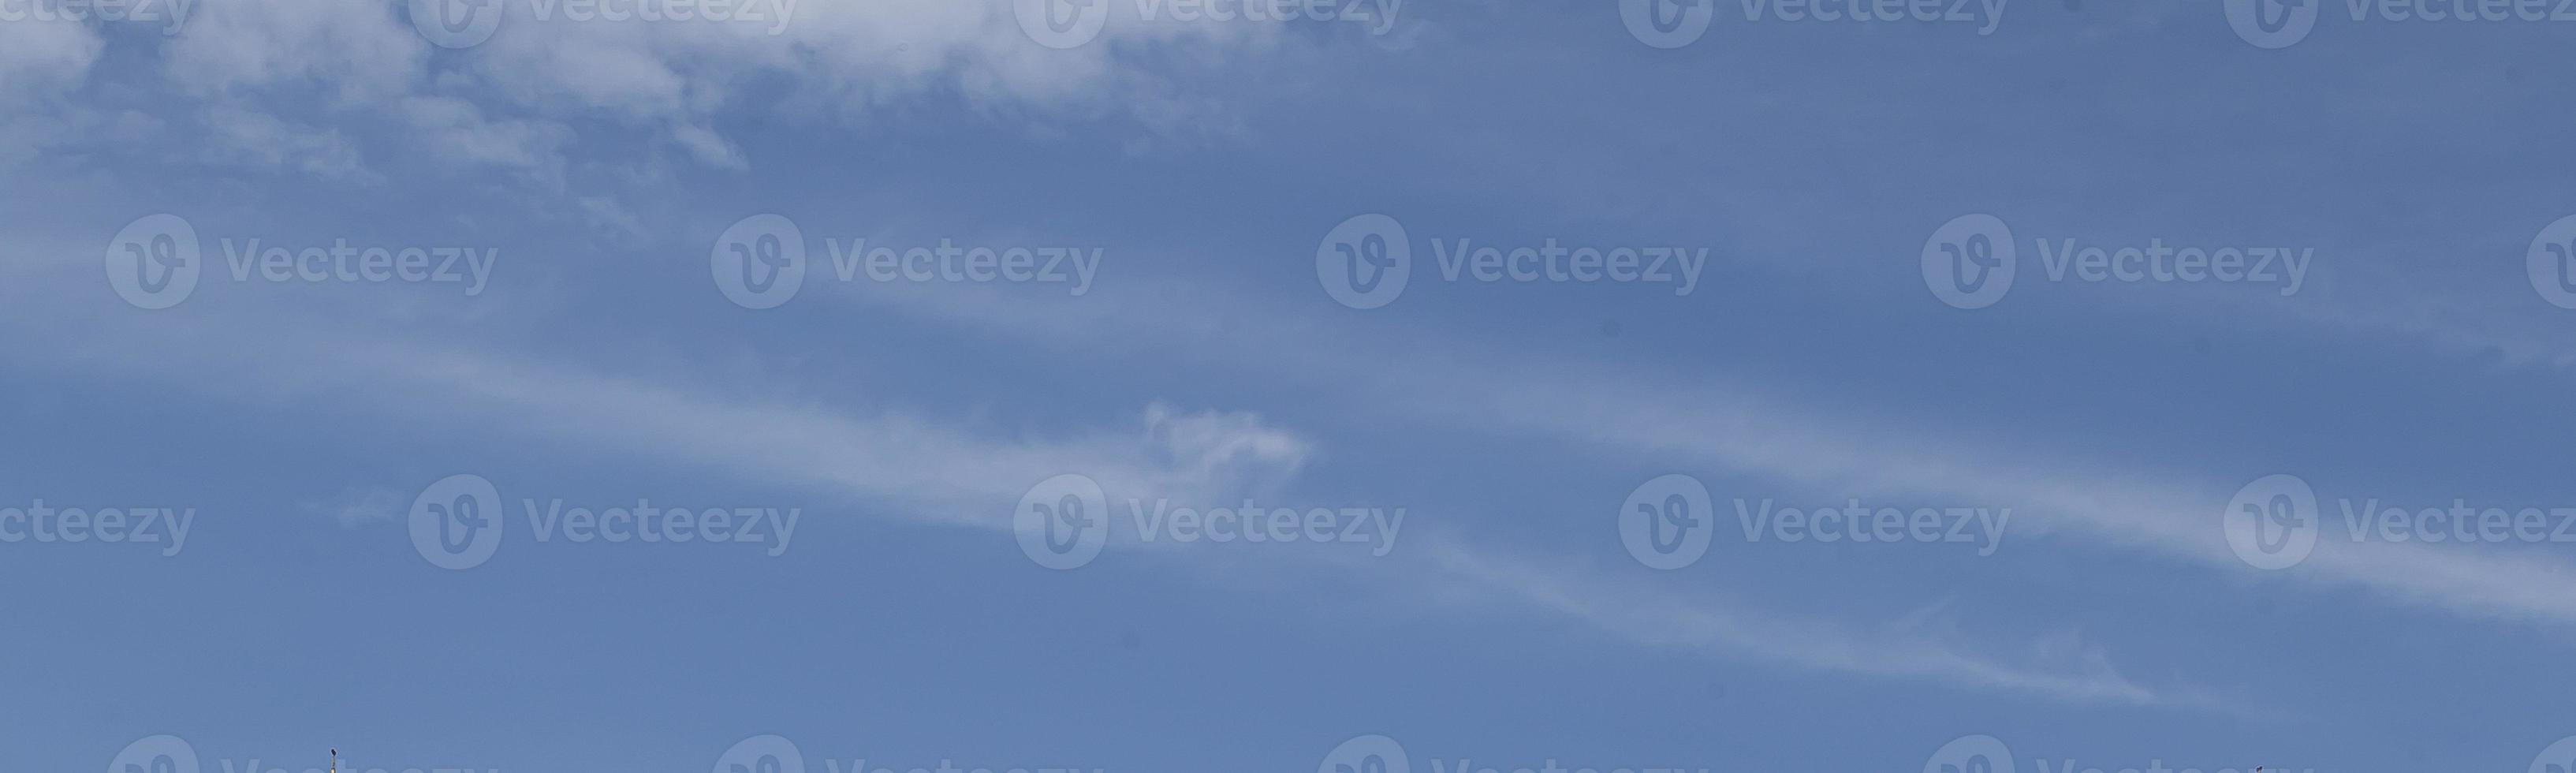 bild av en delvis molnig och delvis klar himmel under de dag foto